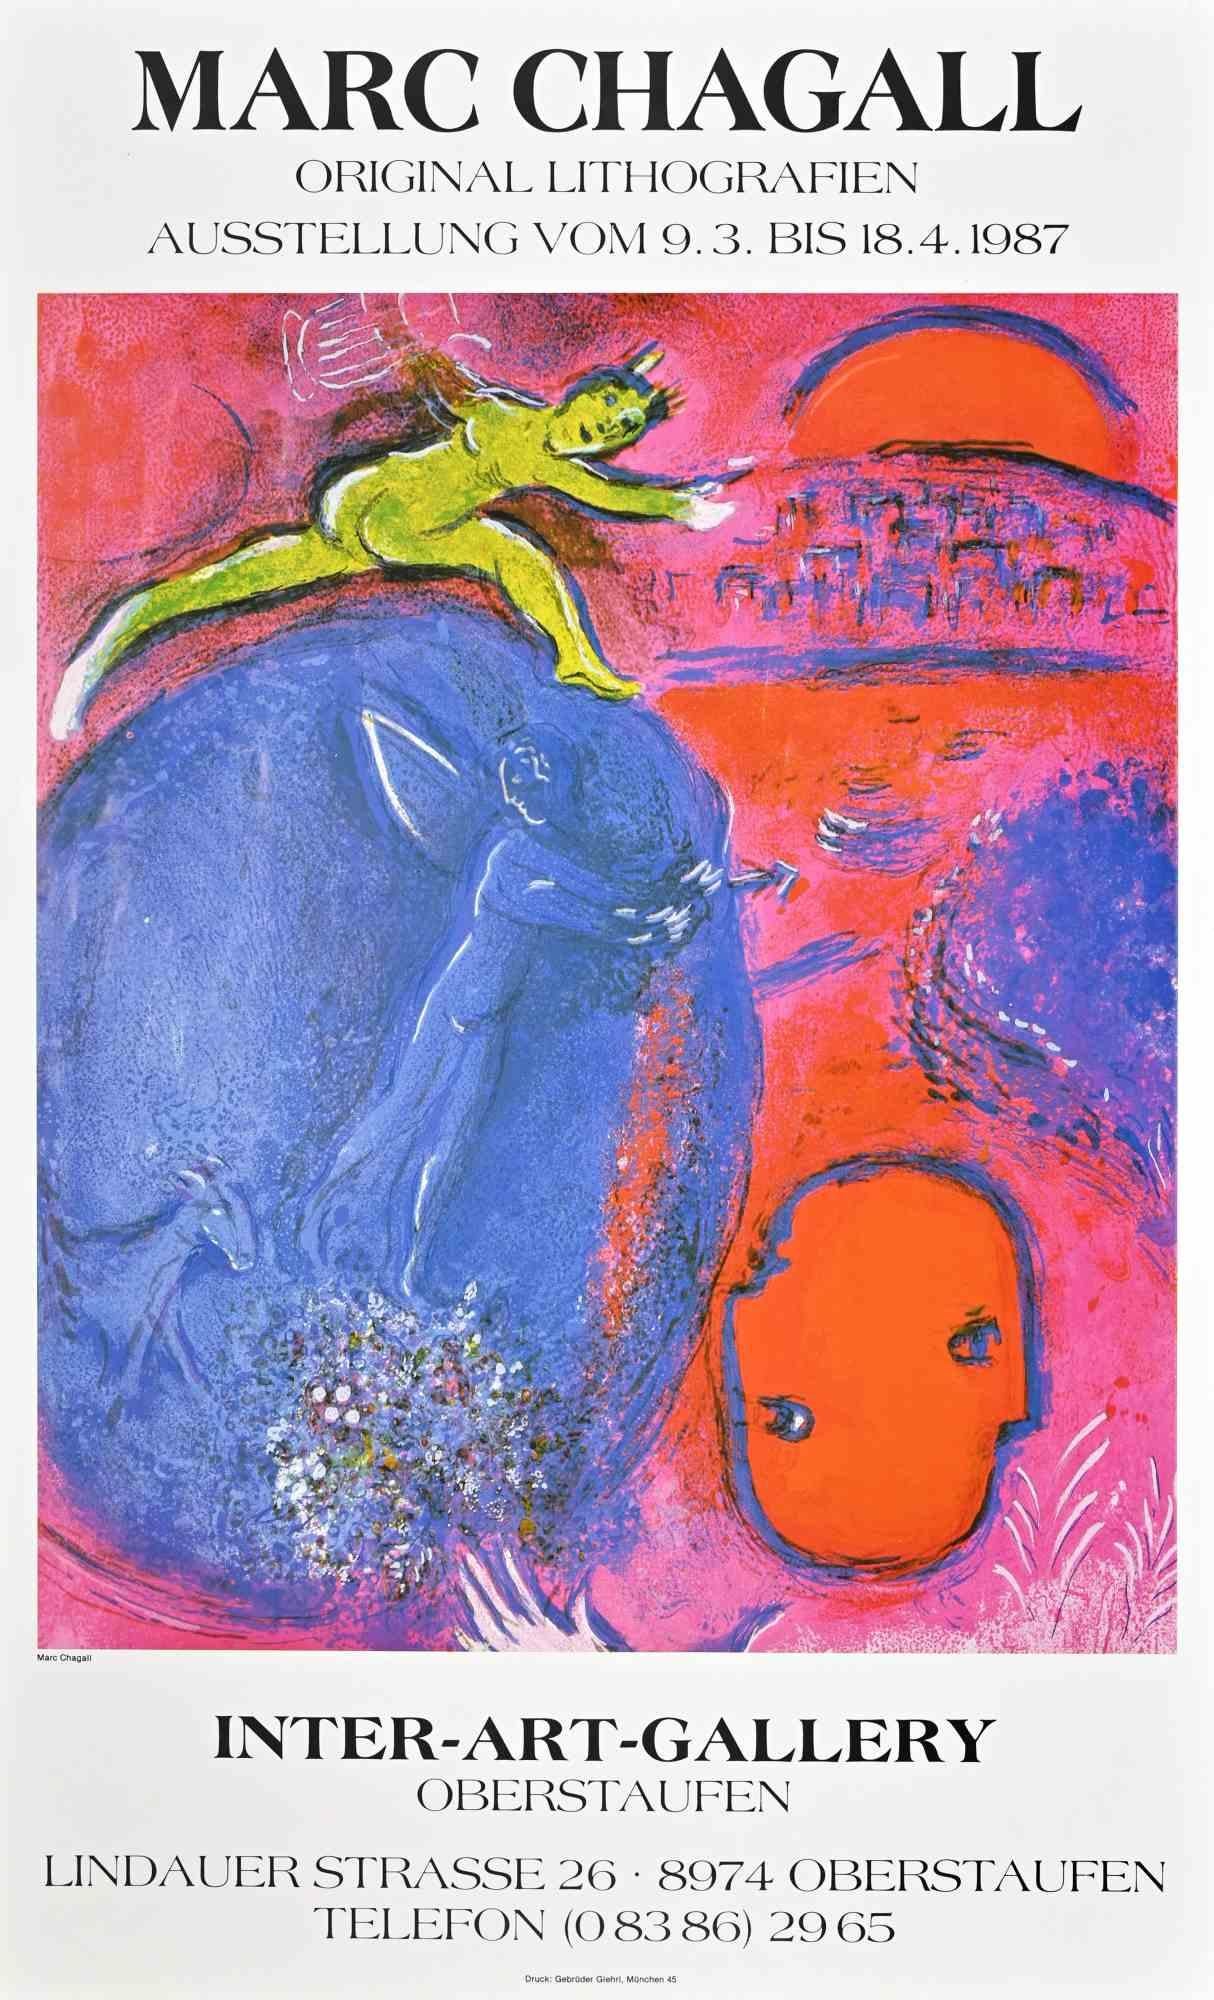 Affiche rétro de l'exposition Inter-Art-Gallery, 1987